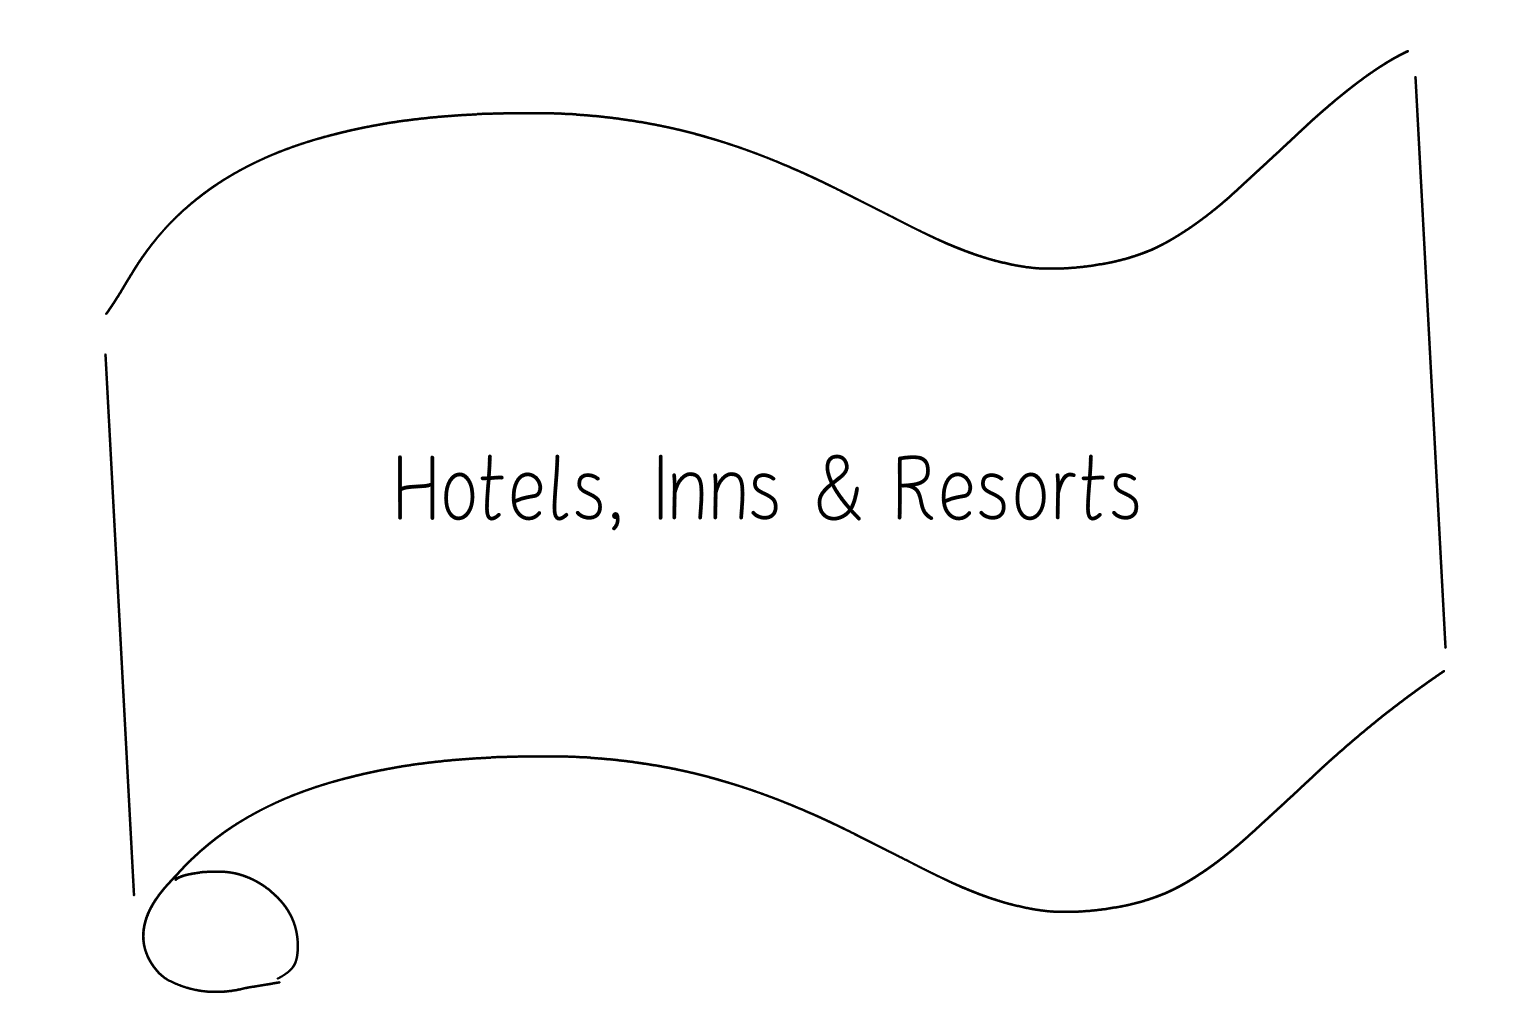 Иллюстрация Отели, гостиницы и курорты